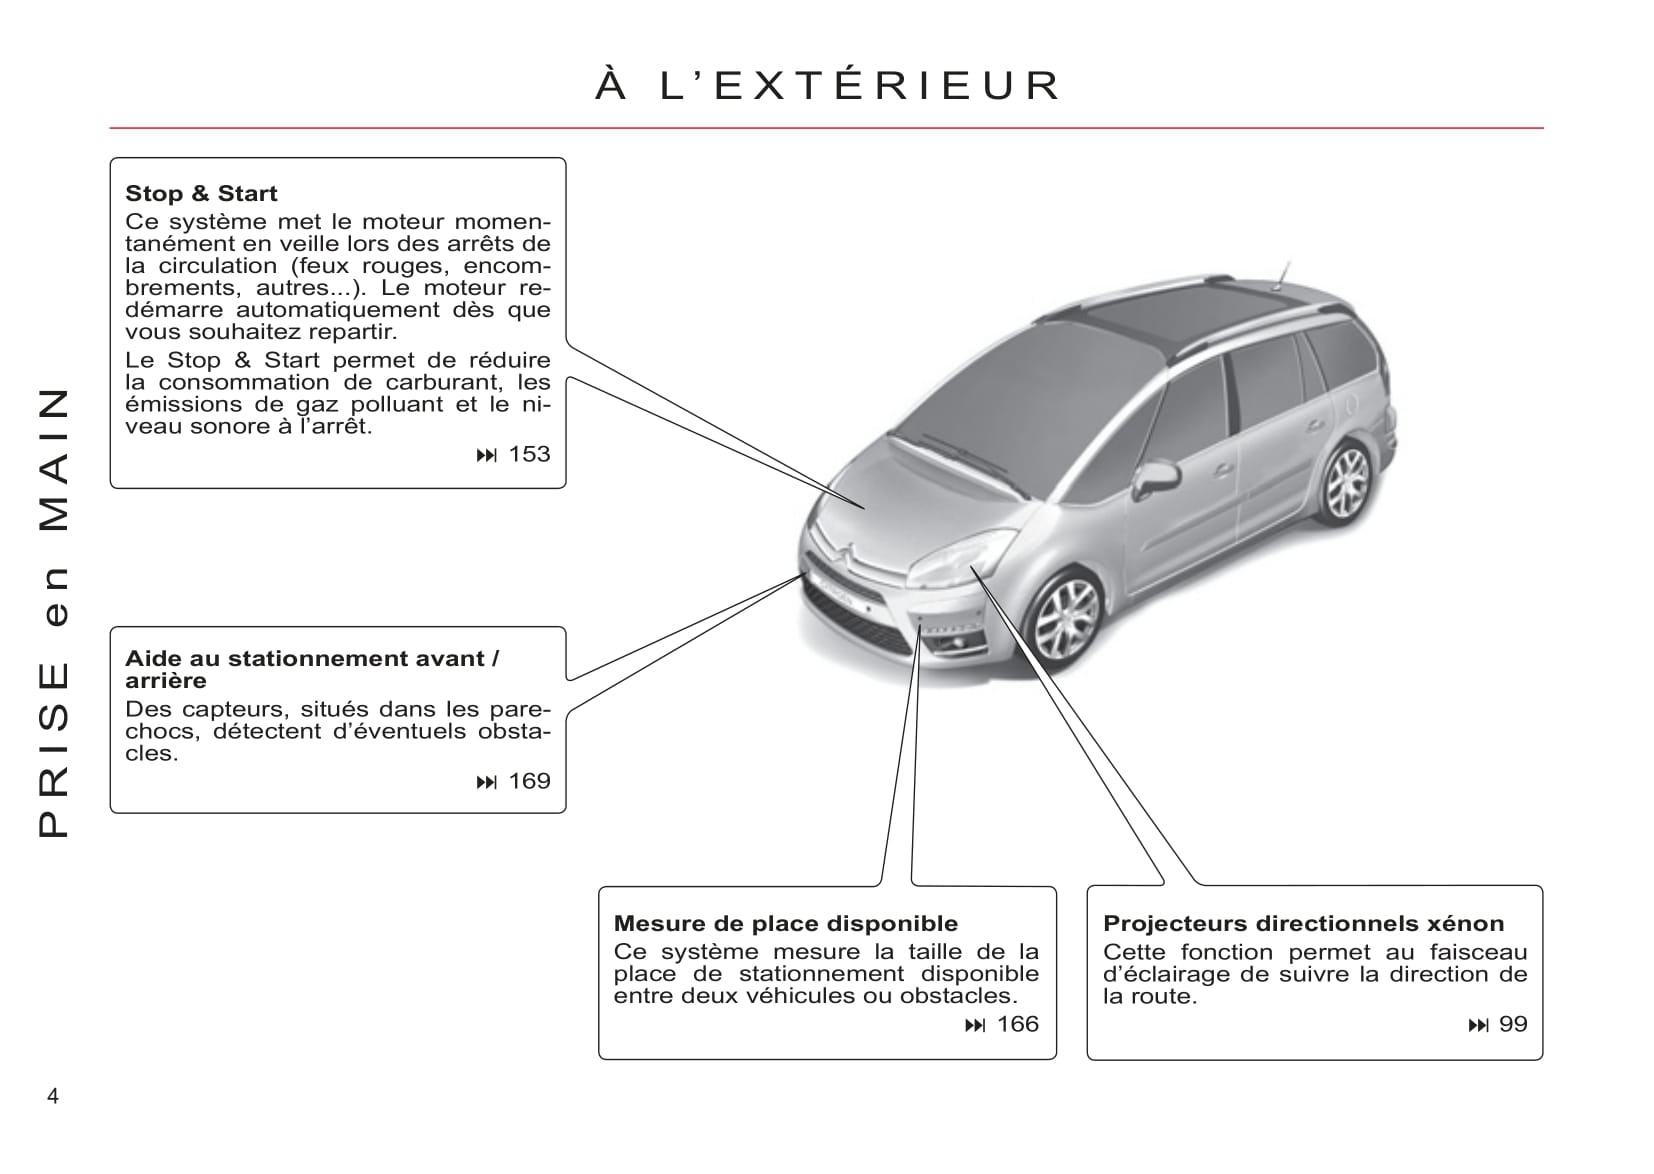 Dimensions: Citroën C4 Picasso 2006-2013 vs. 